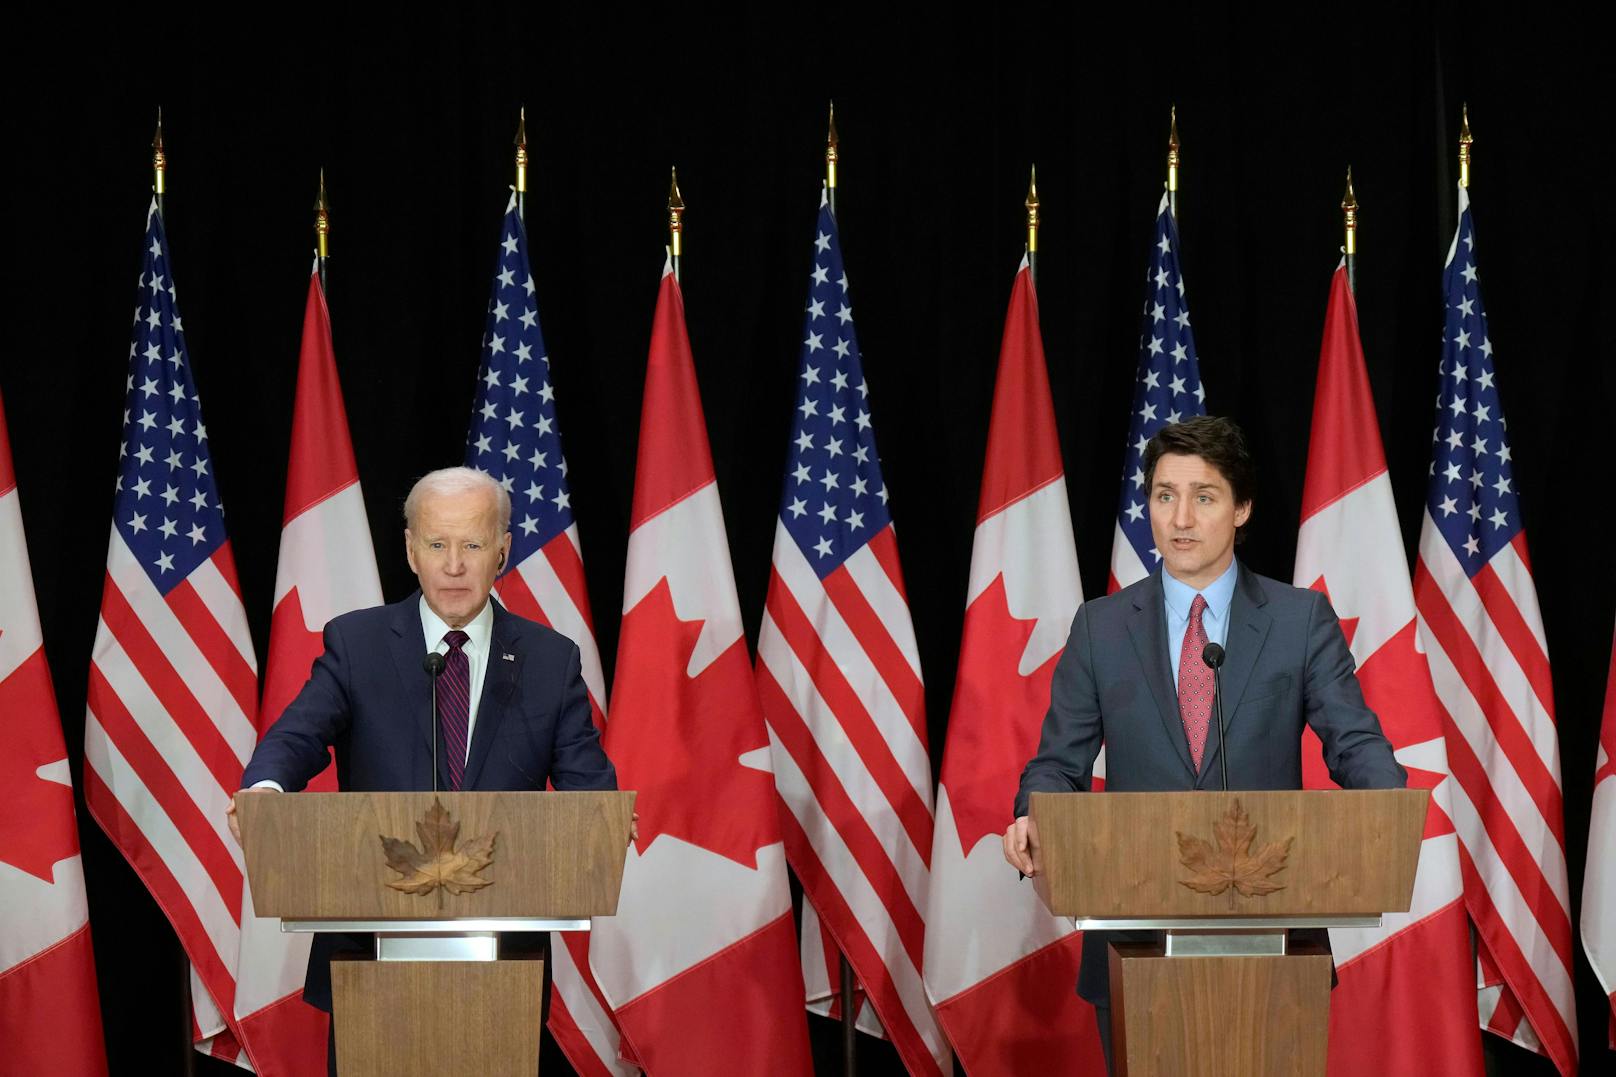 Kanada und USA – gemeinsam gegen illegale Einwanderer